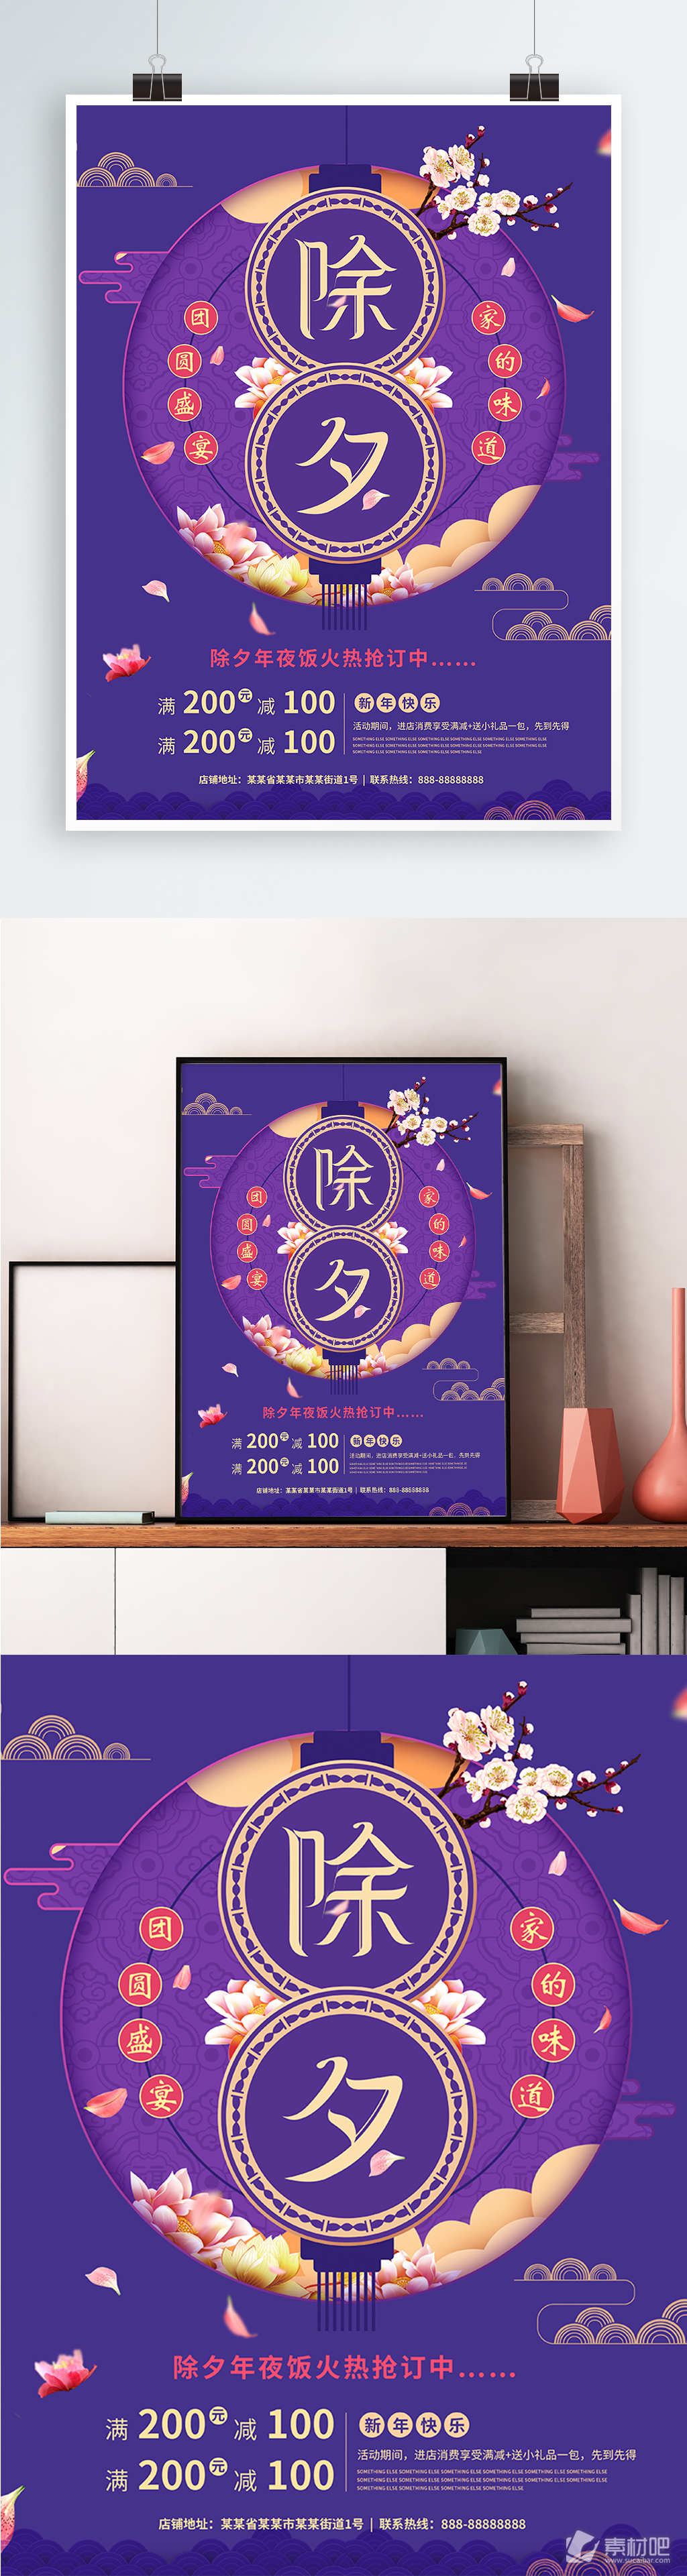 除夕年夜饭紫色花枝大气节日促销海报